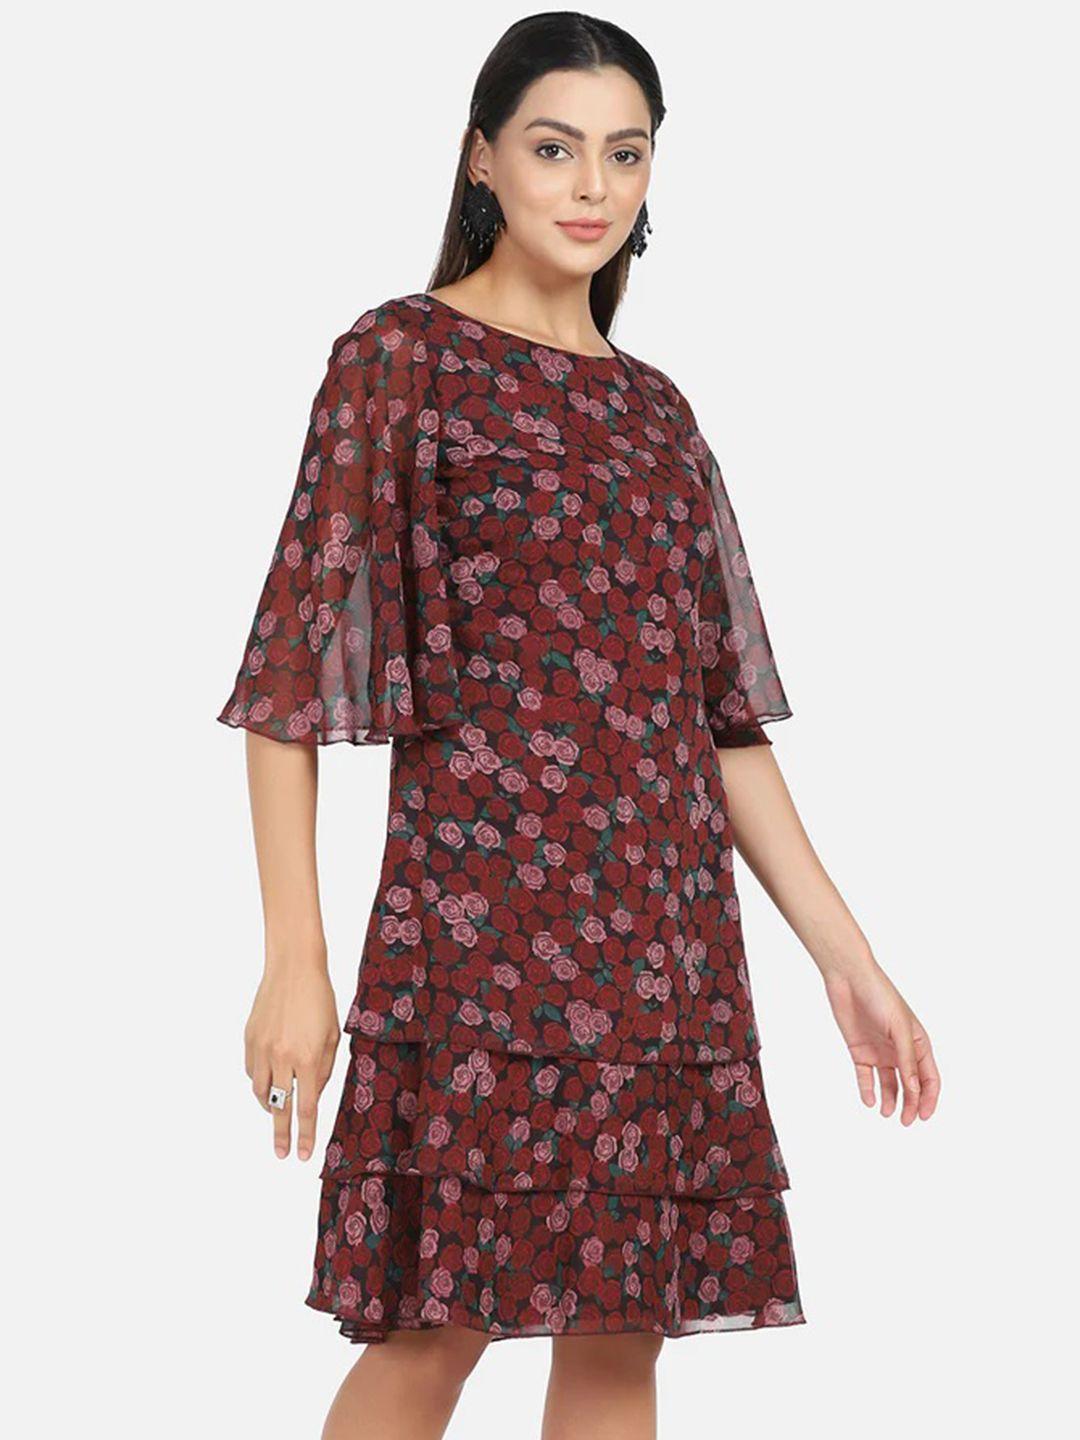 powersutra maroon georgette printed sheath dress